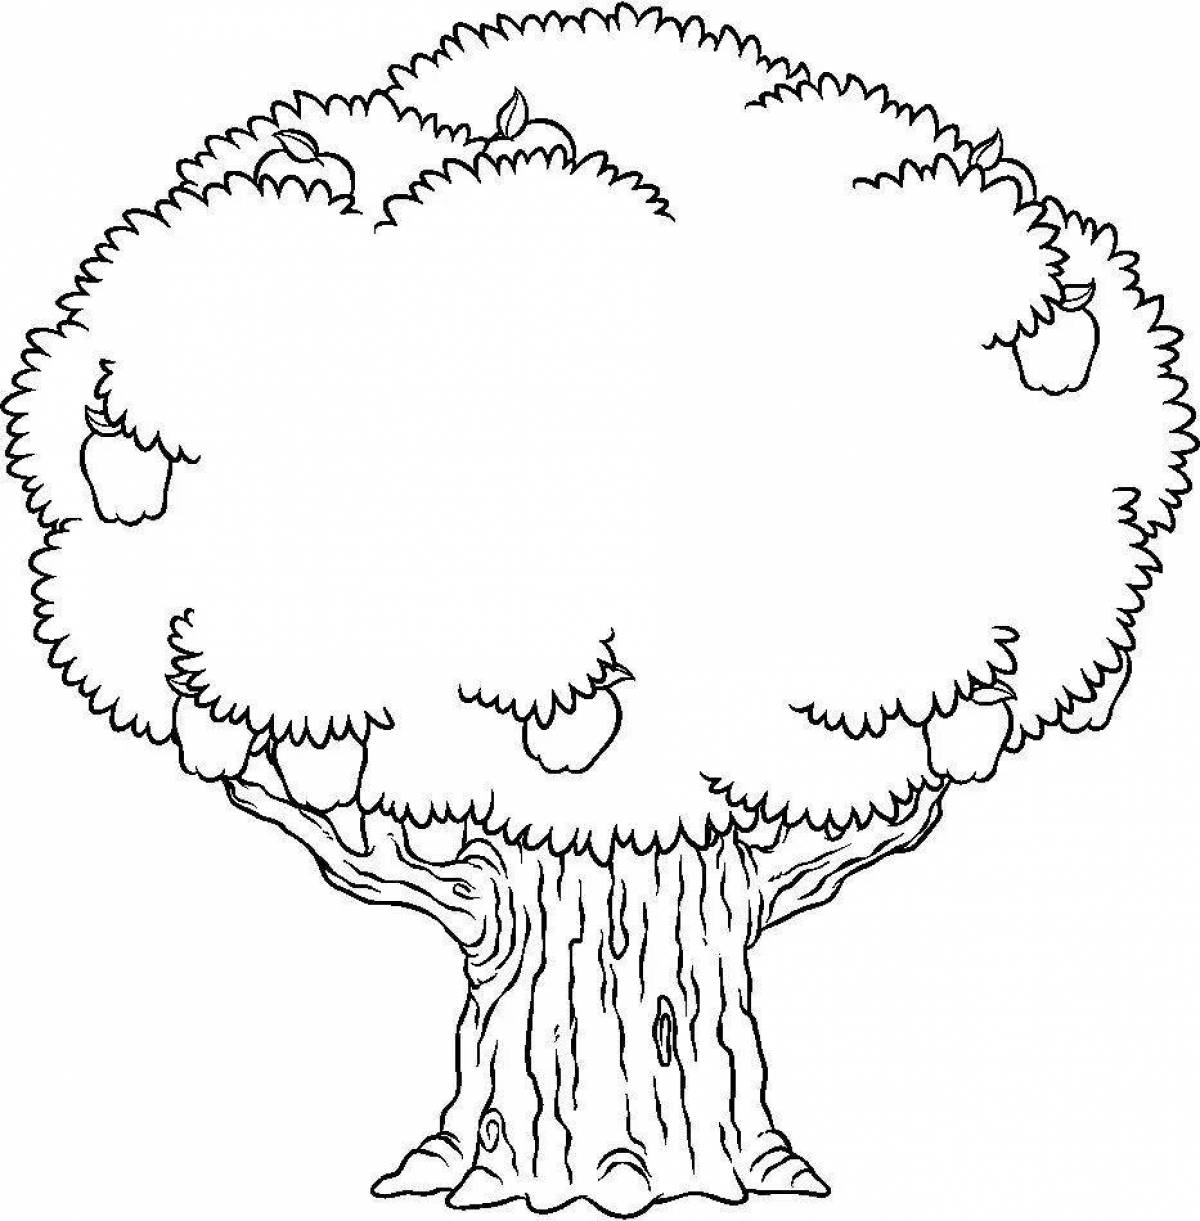 Раскраска Семейное дерево, скачать и распечатать раскраску раздела Семья